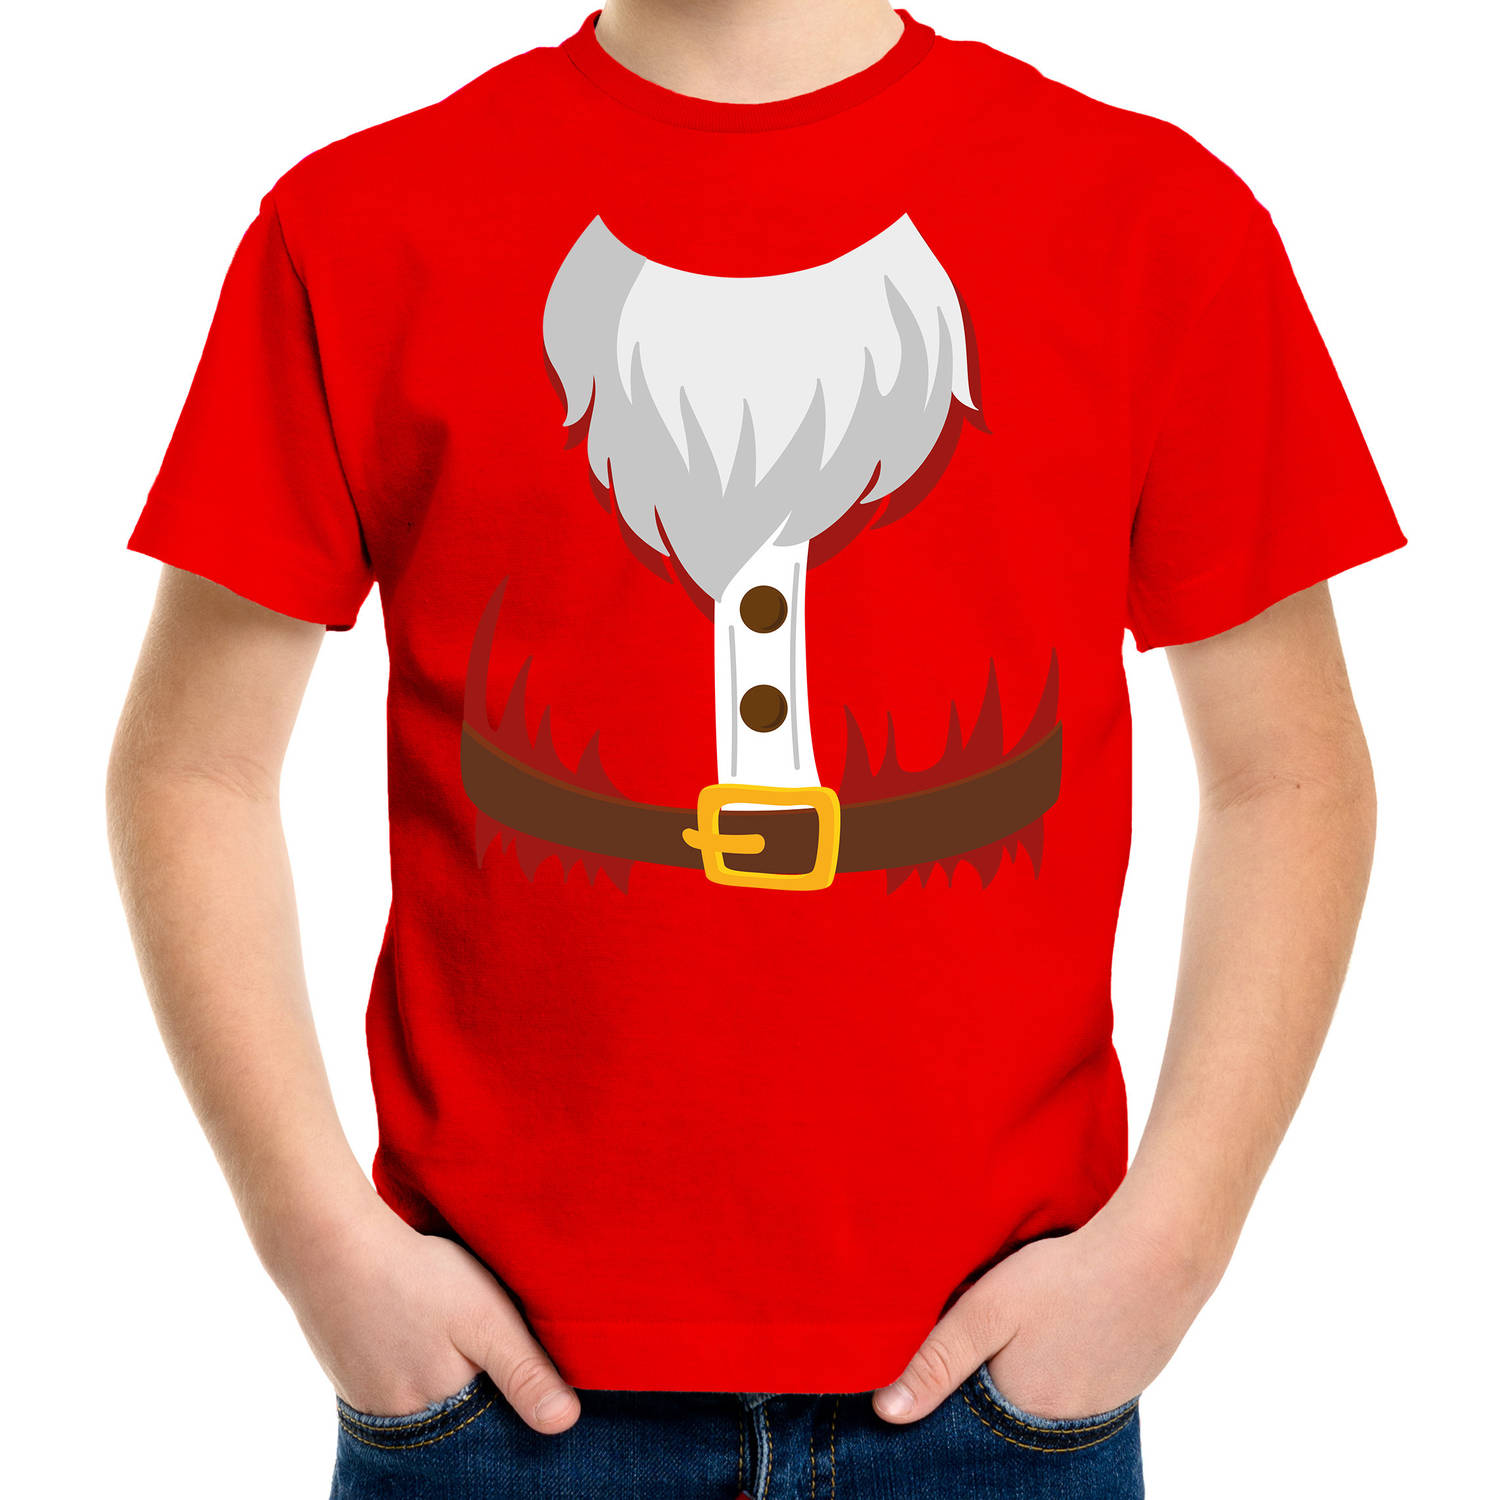 Kerstman kostuum verkleed t-shirt rood voor kinderen S (110-116) - Kerst kostuums